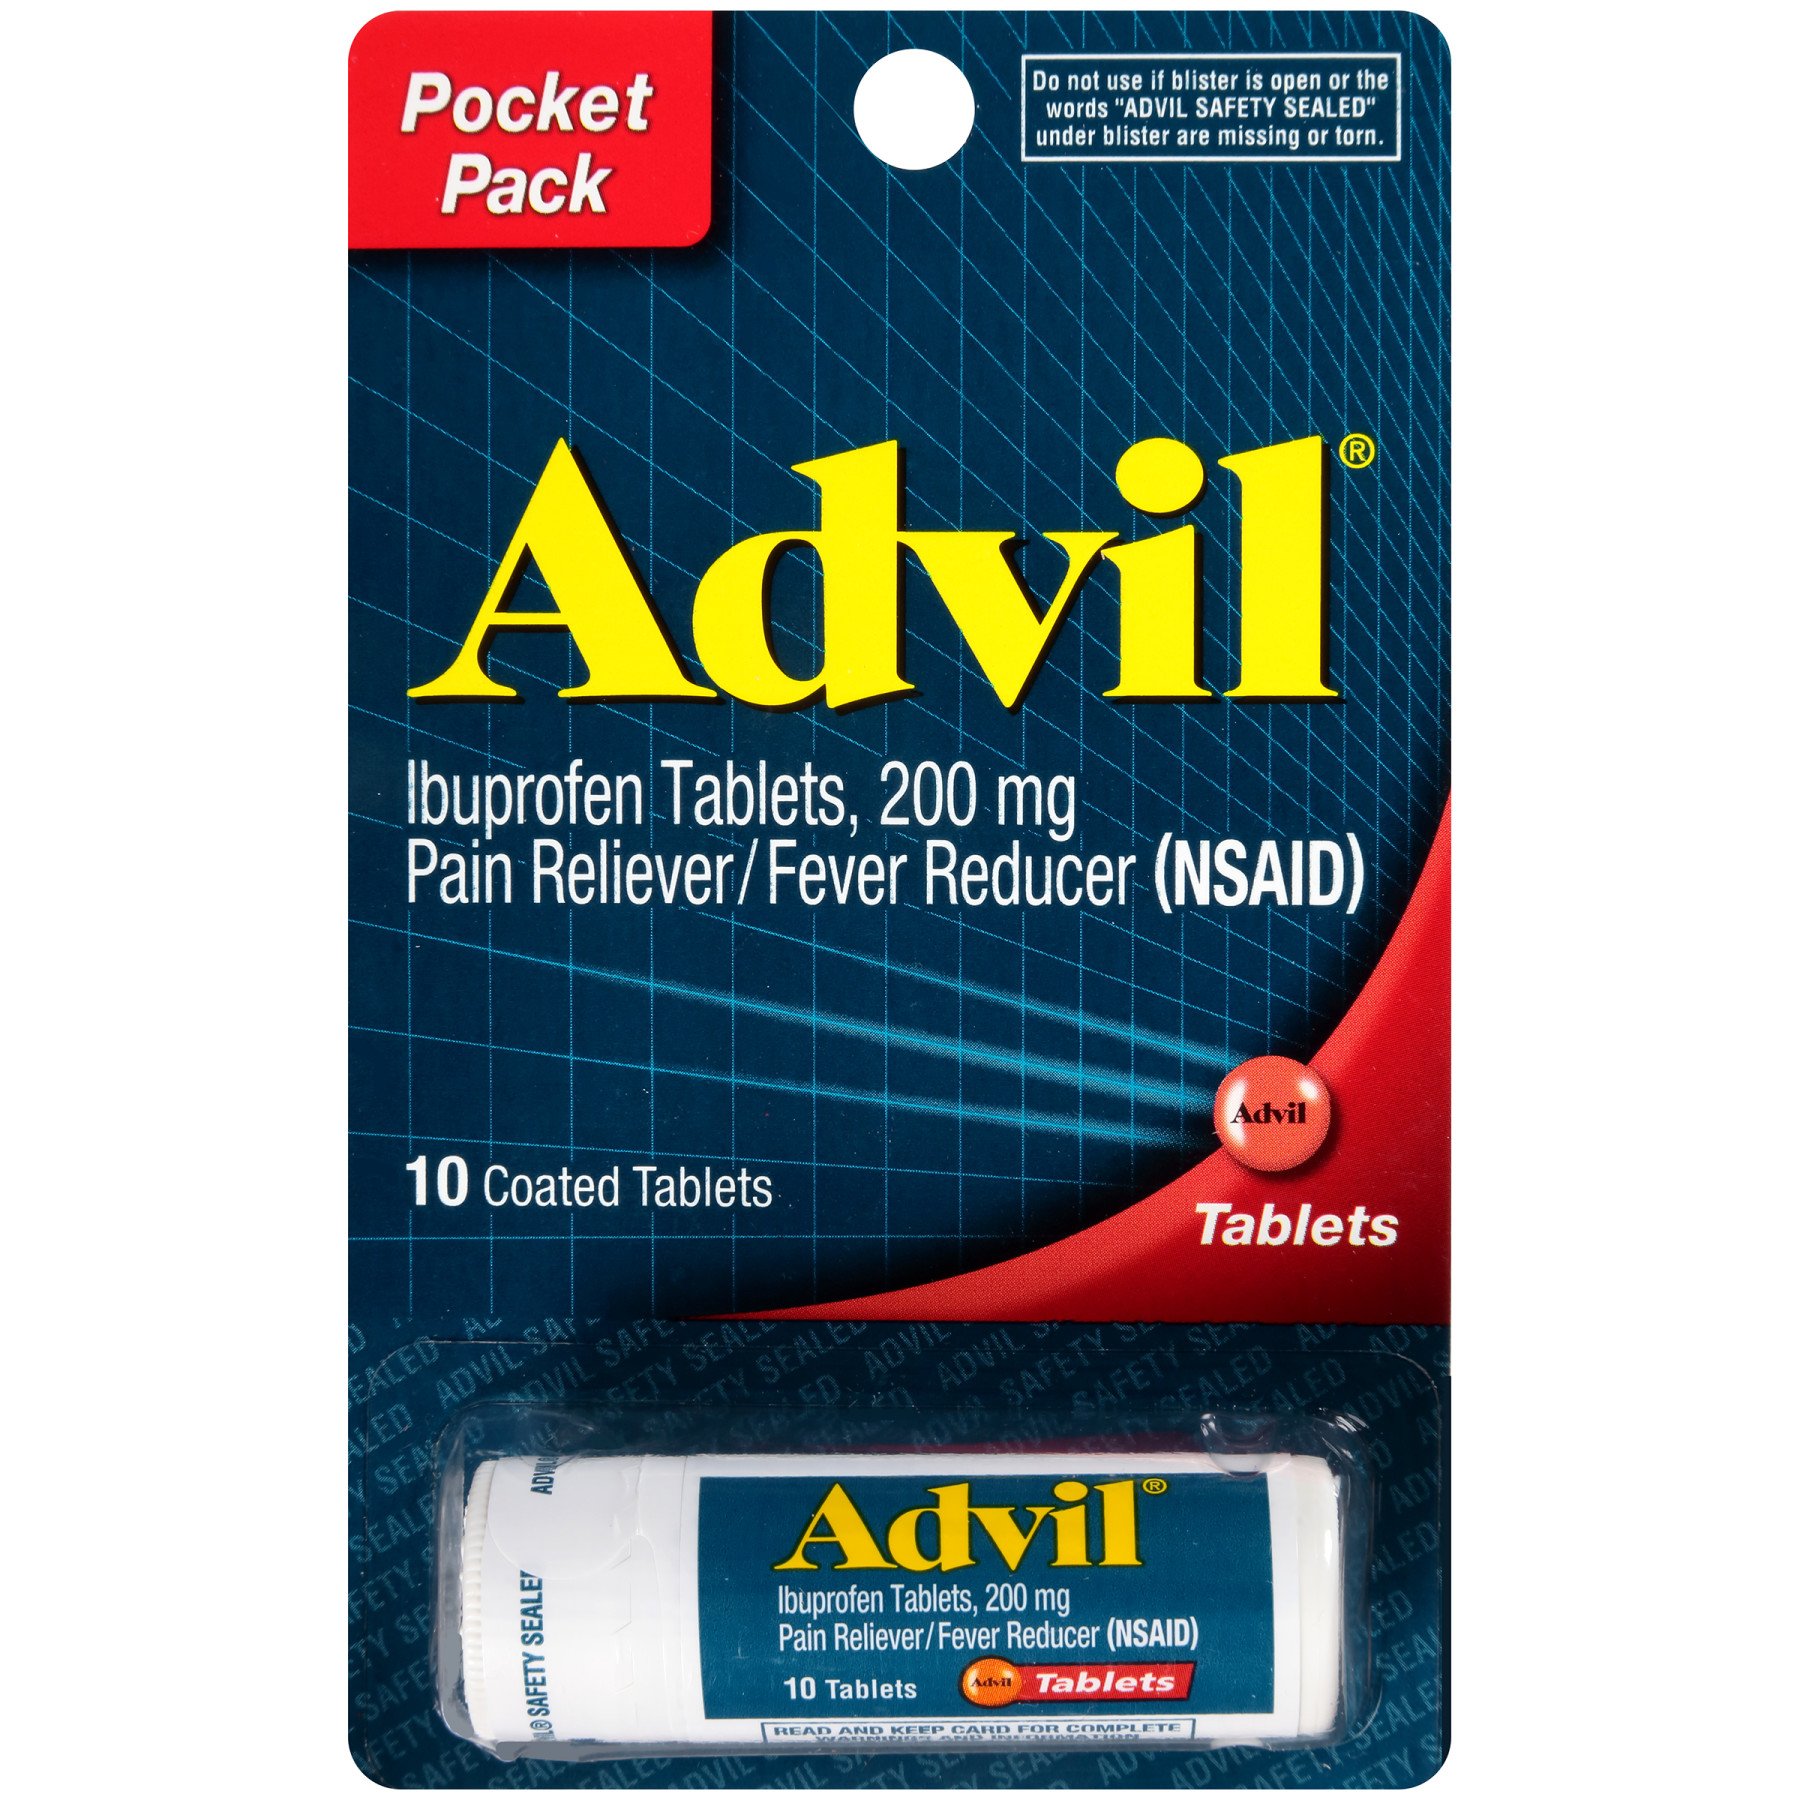 Advil Ibuprofen 200 mg Coated Tablets Pocket Pack Travel